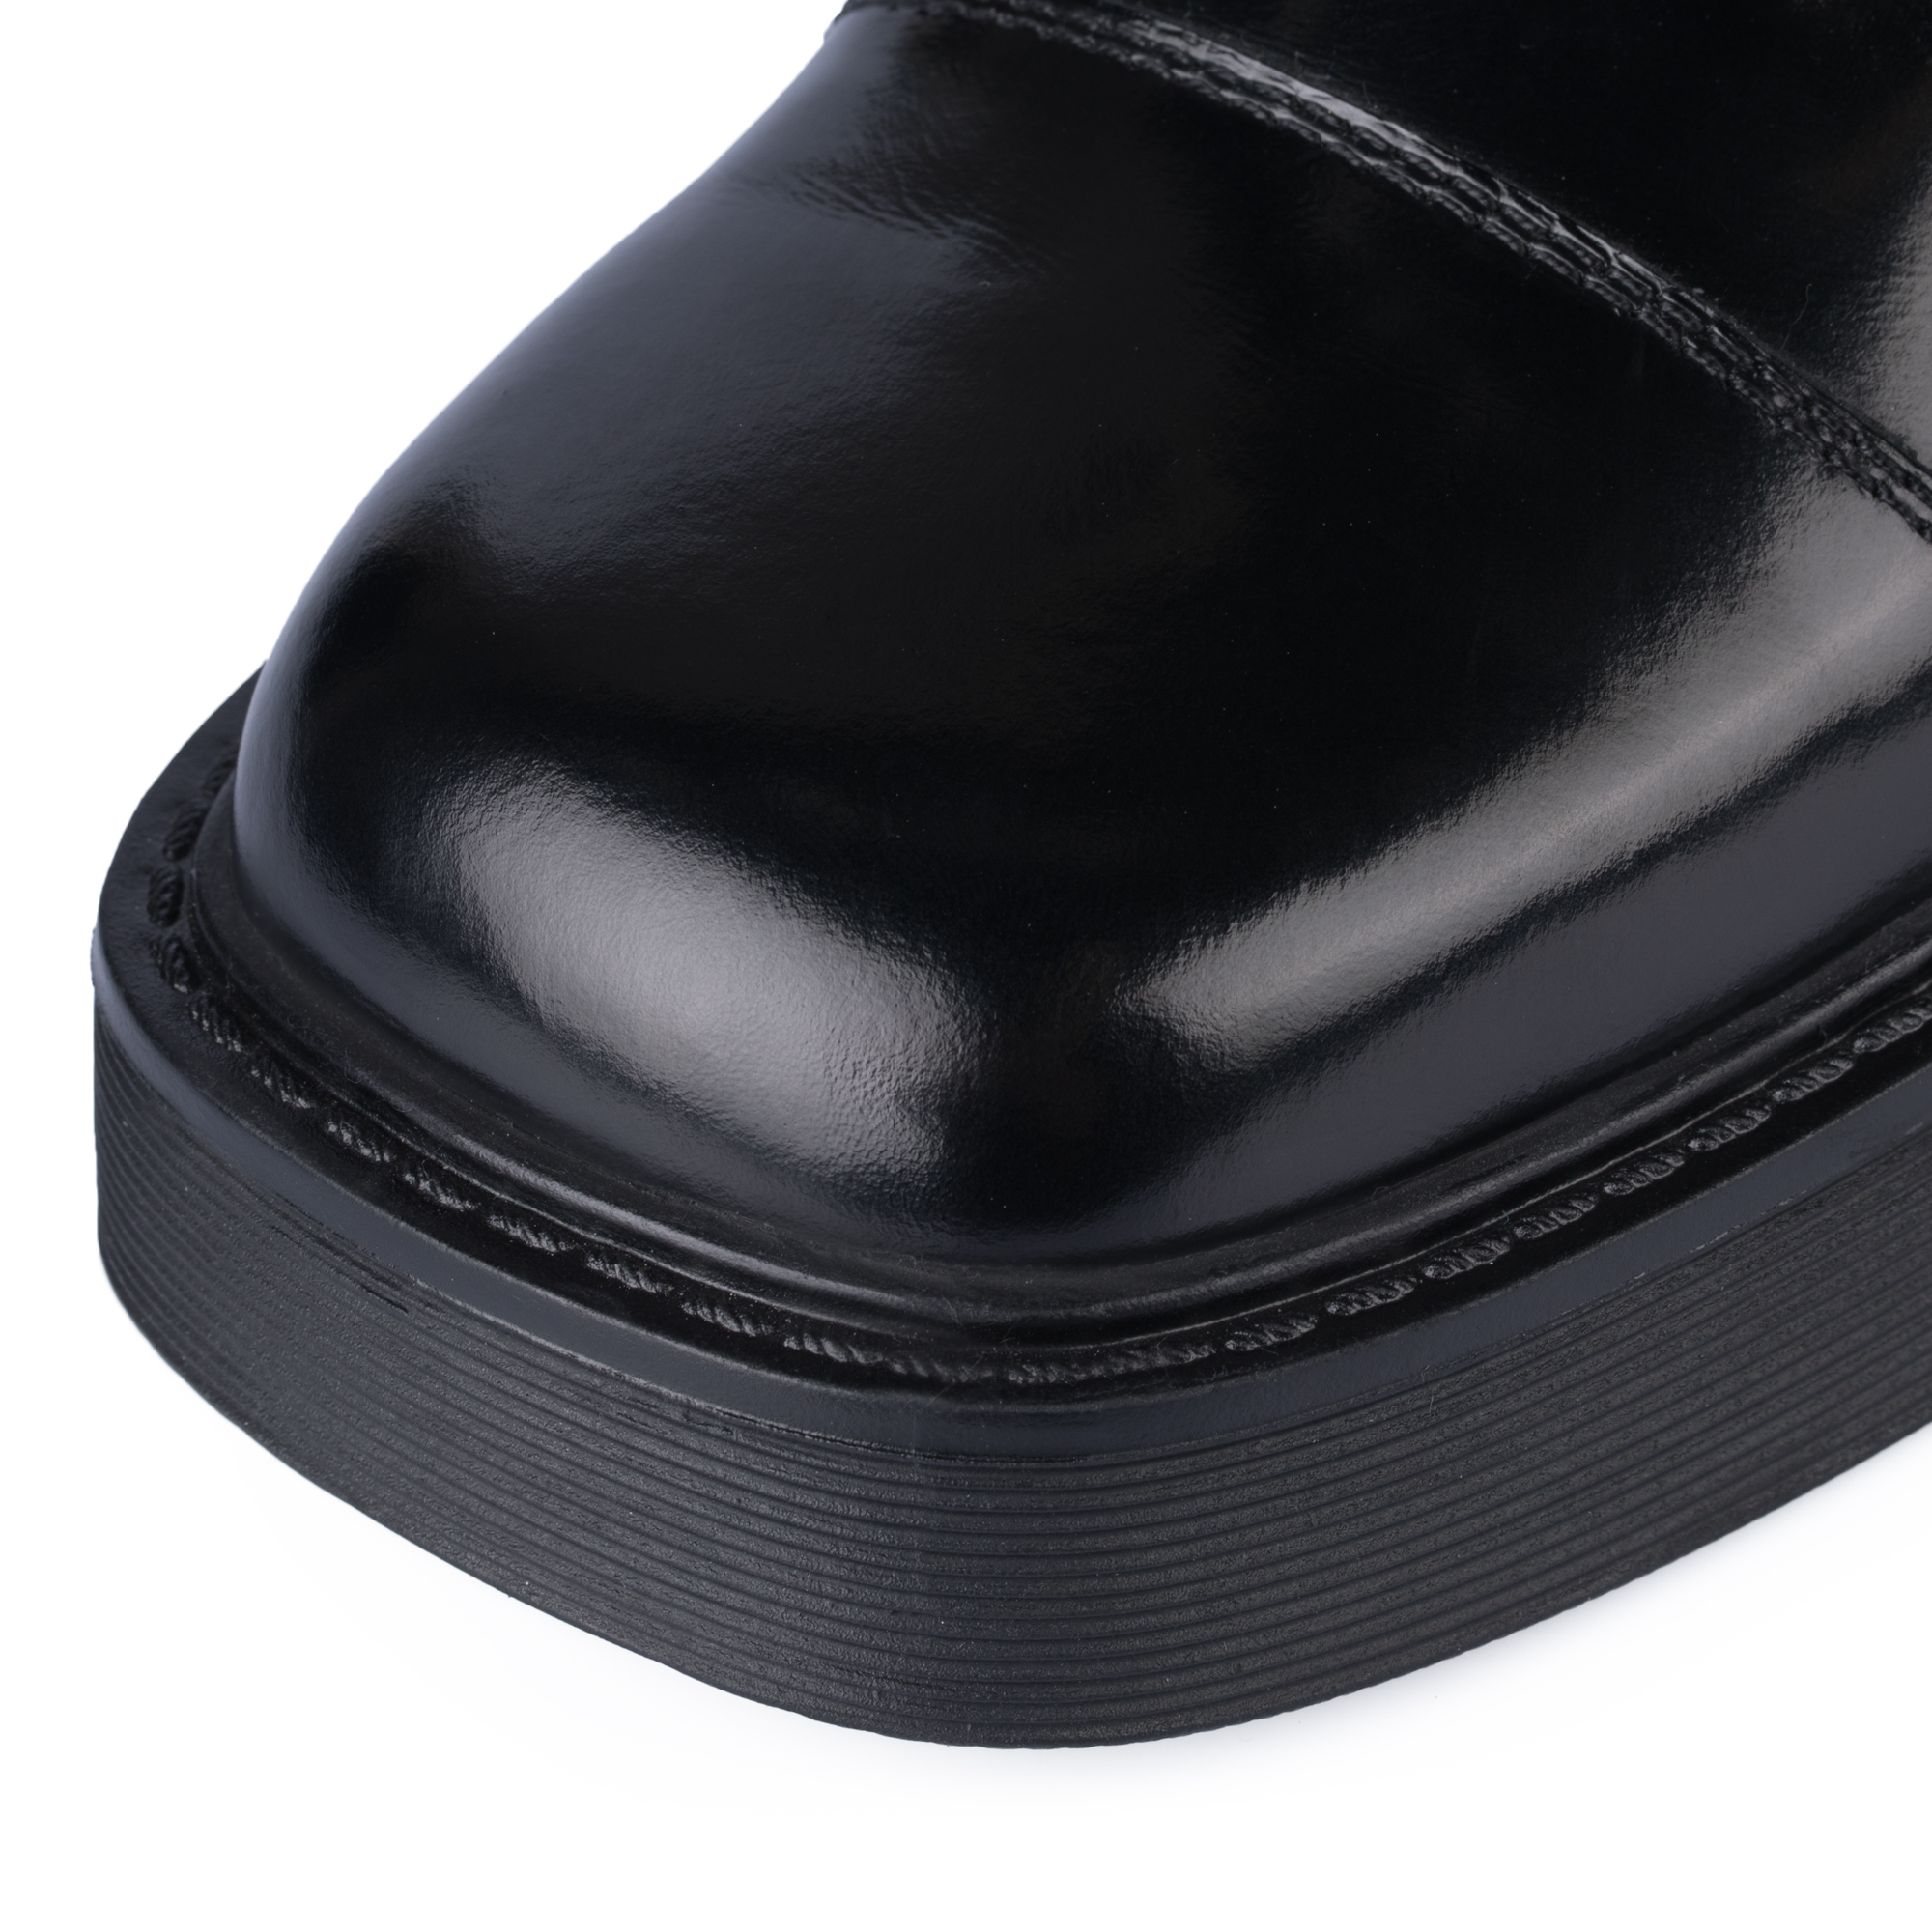 Ботинки Thomas Munz 126-400A-2102, цвет черный, размер 38 - фото 6